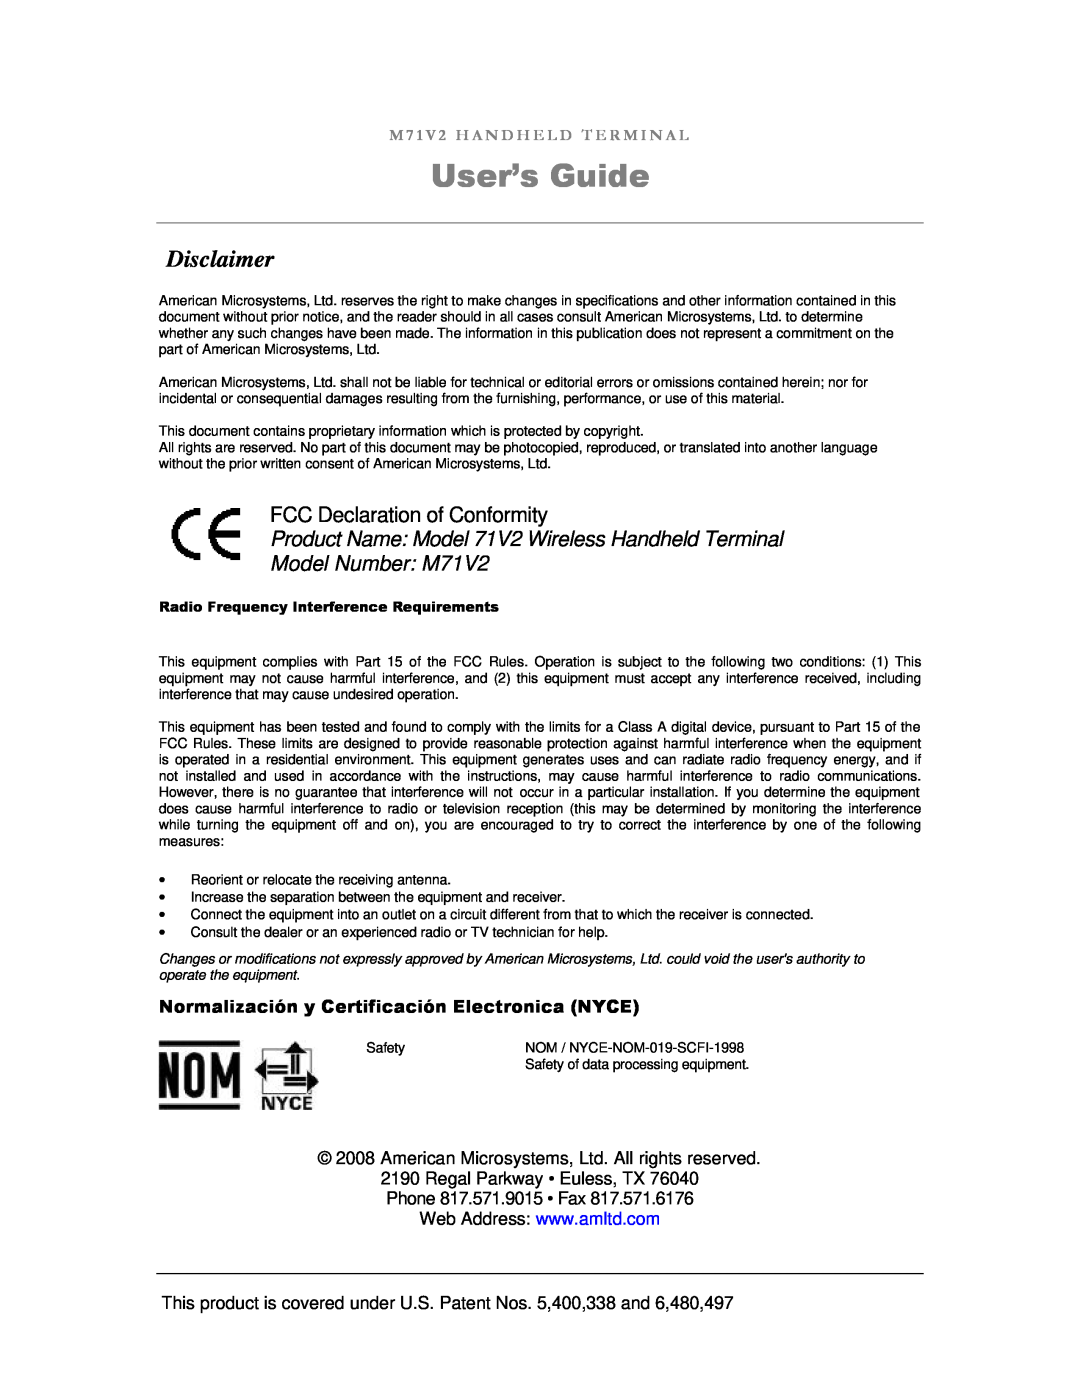 IBM M71V2 manual User’s Guide, Disclaimer, FCC Declaration of Conformity, Normalización y Certificación Electronica NYCE 